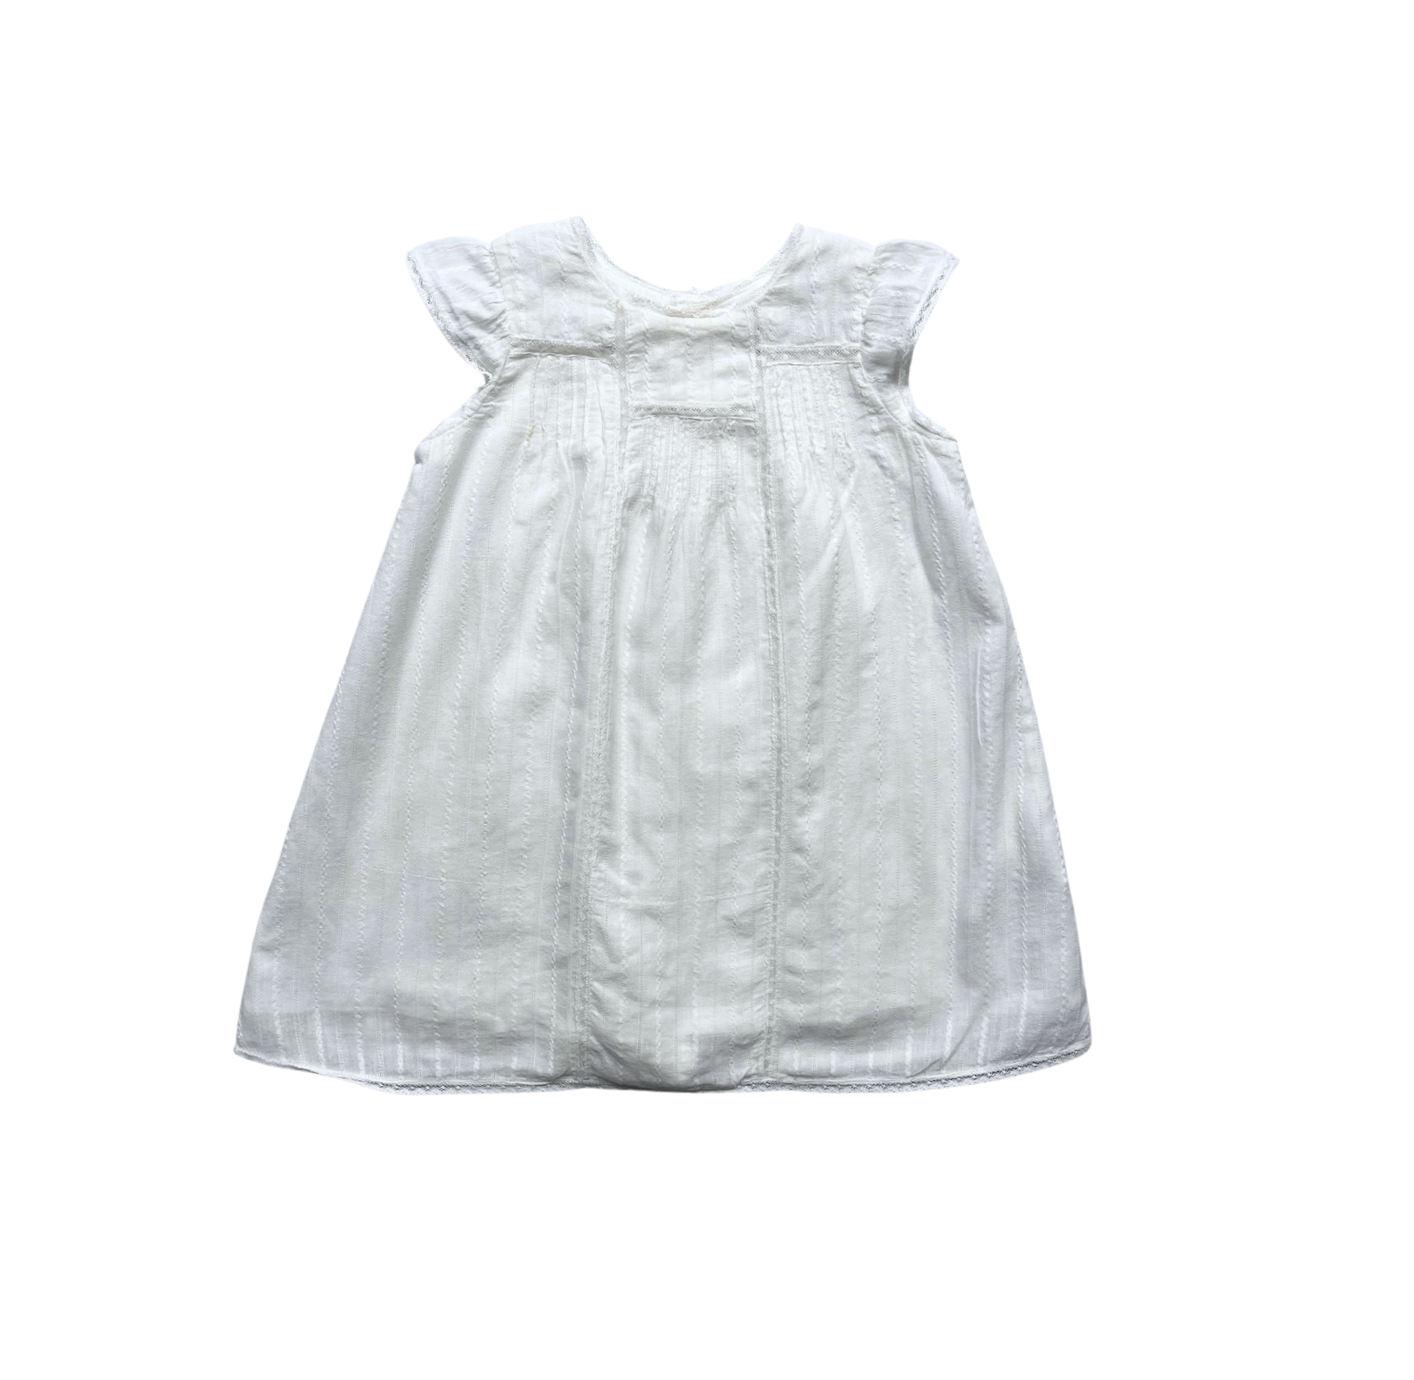 BONPOINT - Robe blanche détails dentelle - 2 ans